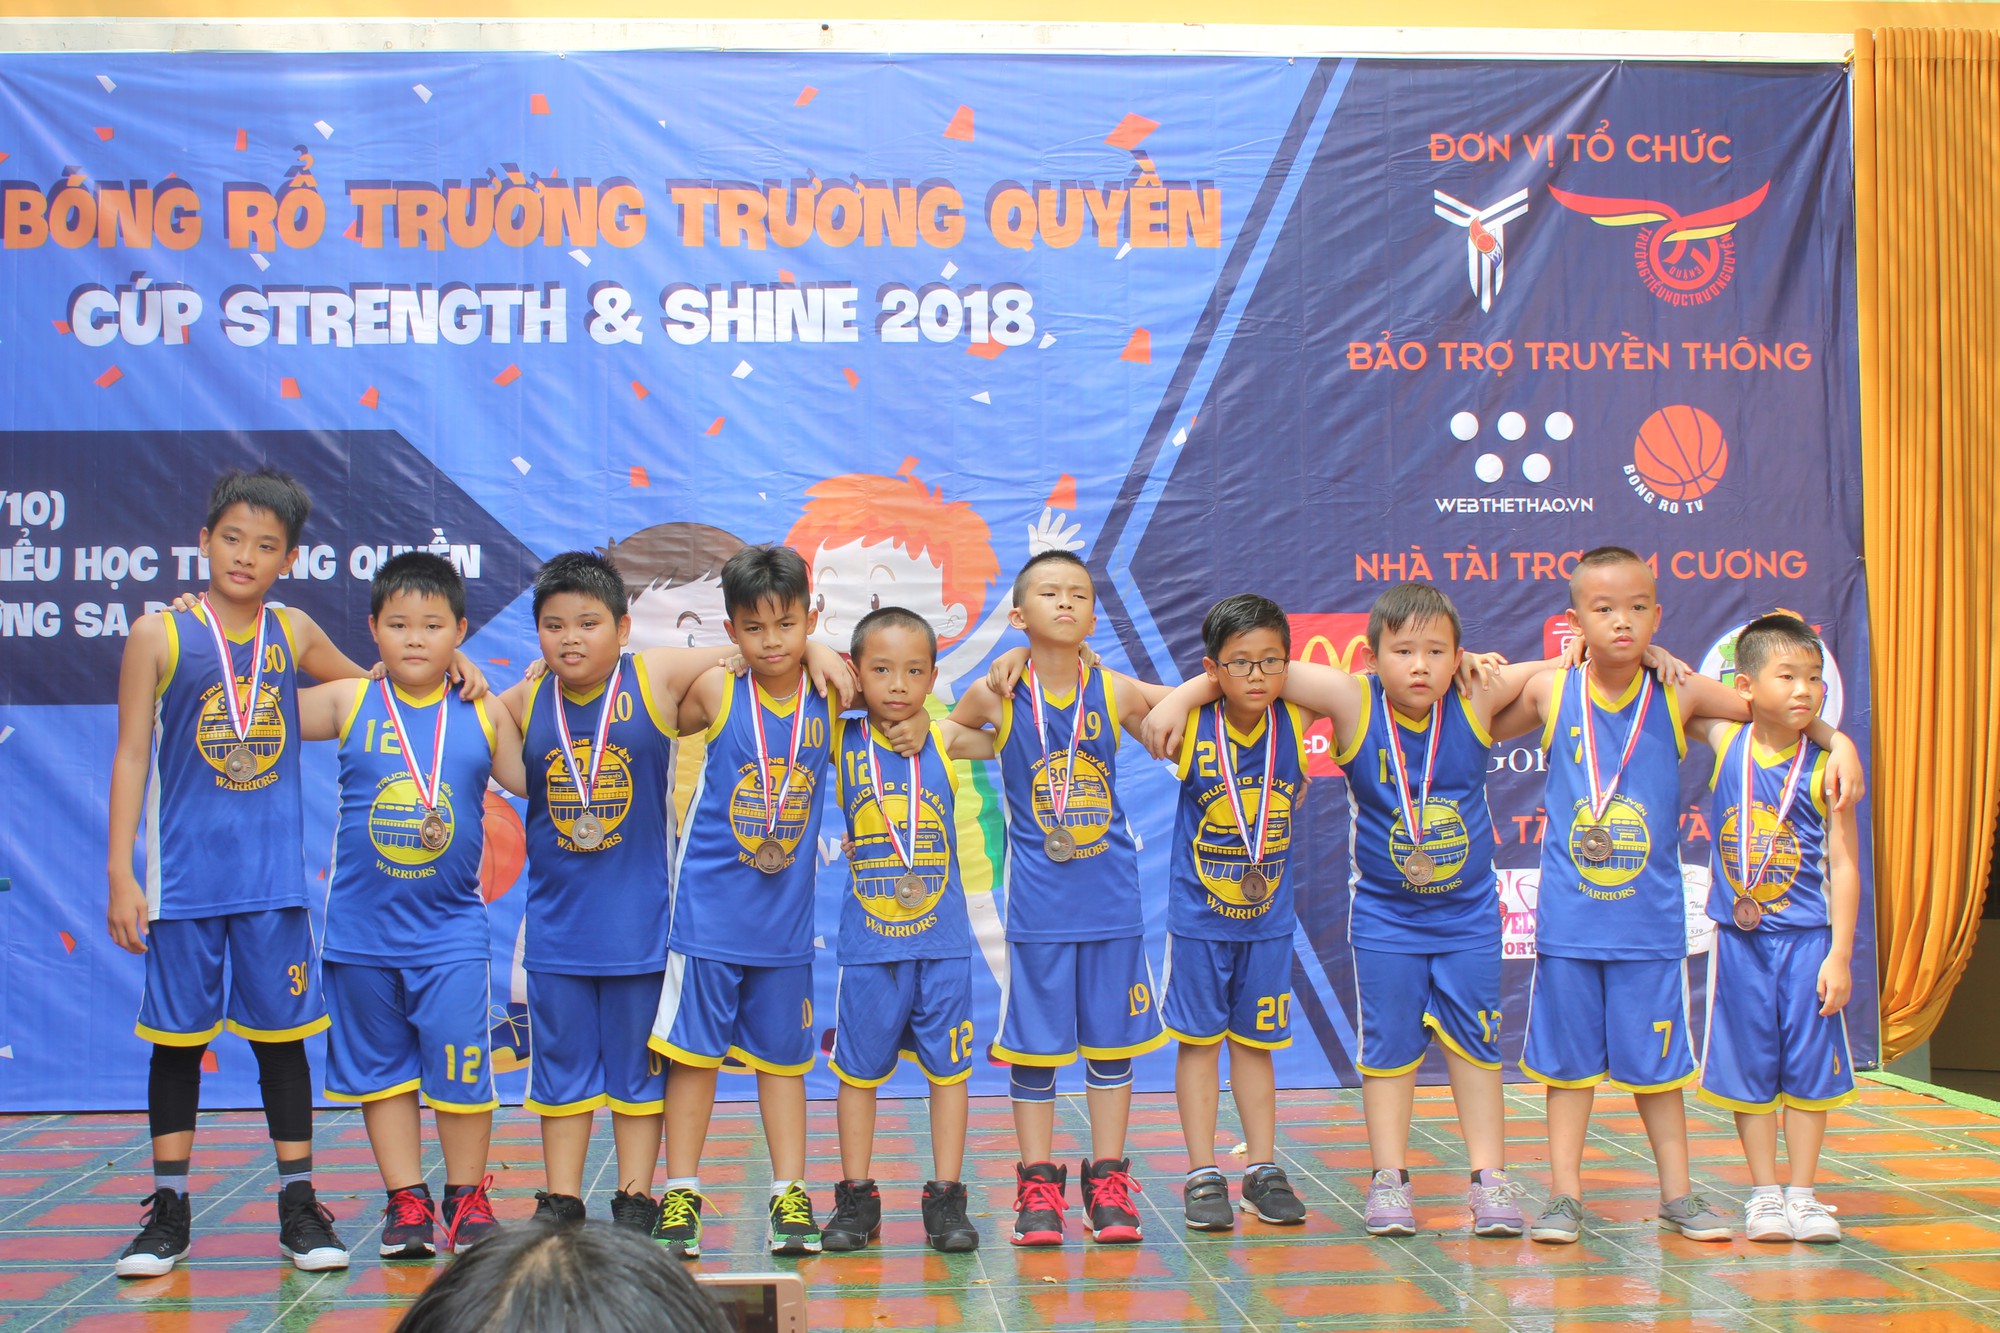 Giải bóng rổ trường Trương Quyền - Cúp Strength and Shine 2018: Nuôi dưỡng đam mê từ cấp tiểu học - Ảnh 1.